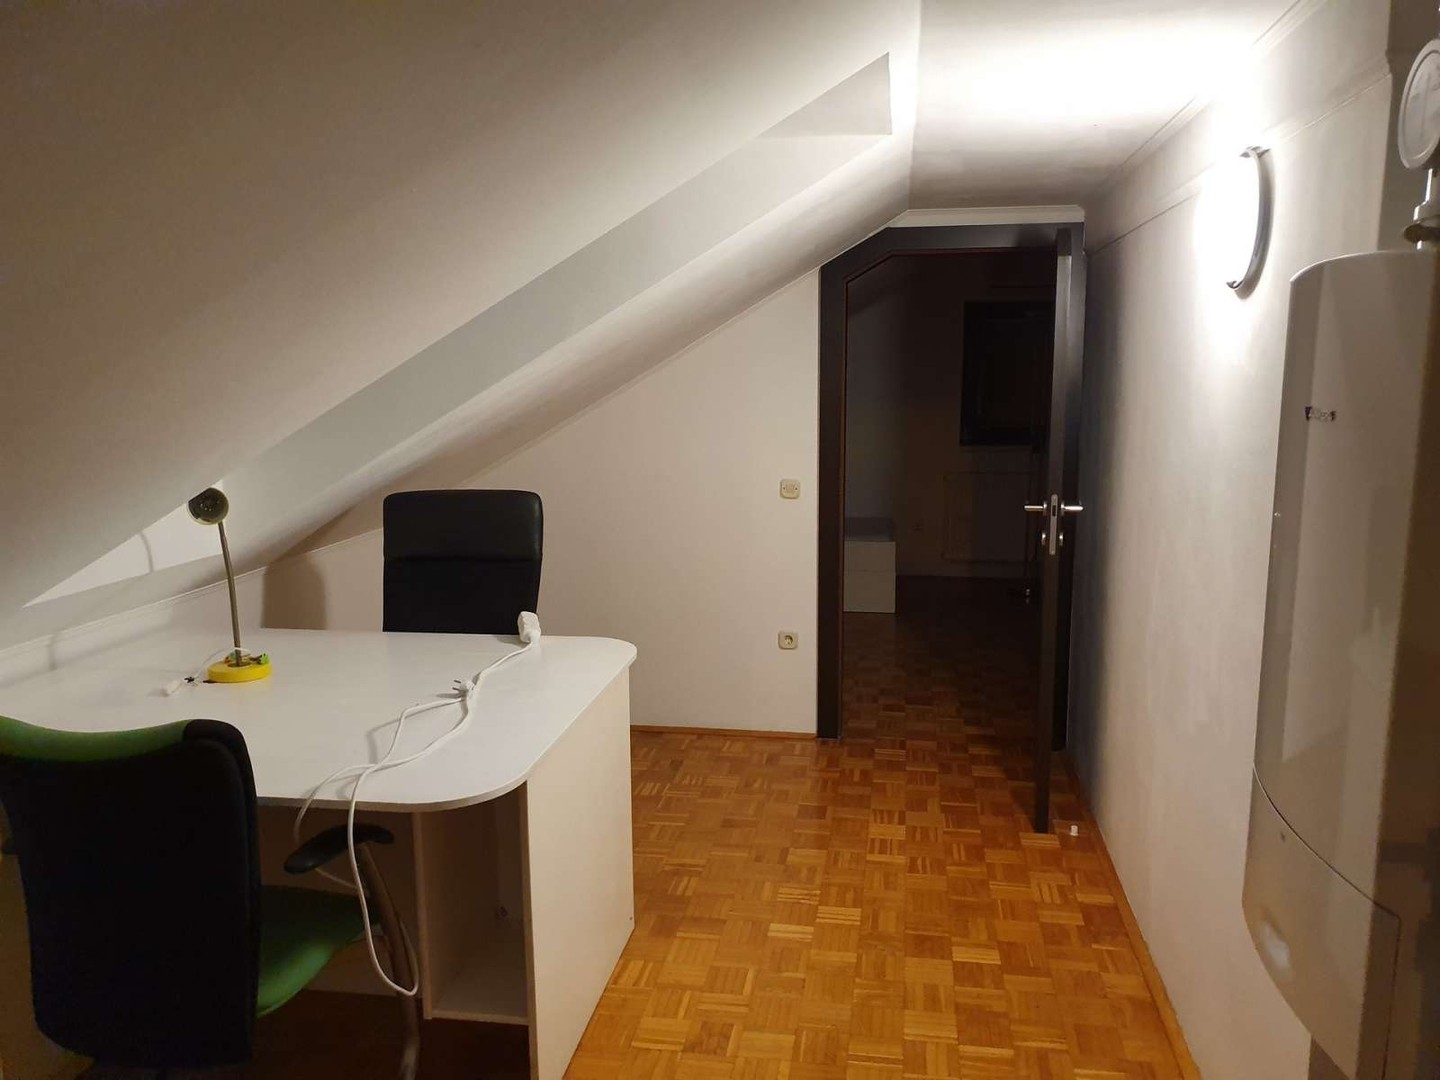 Alquiler de habitaciones por meses en ljubljana